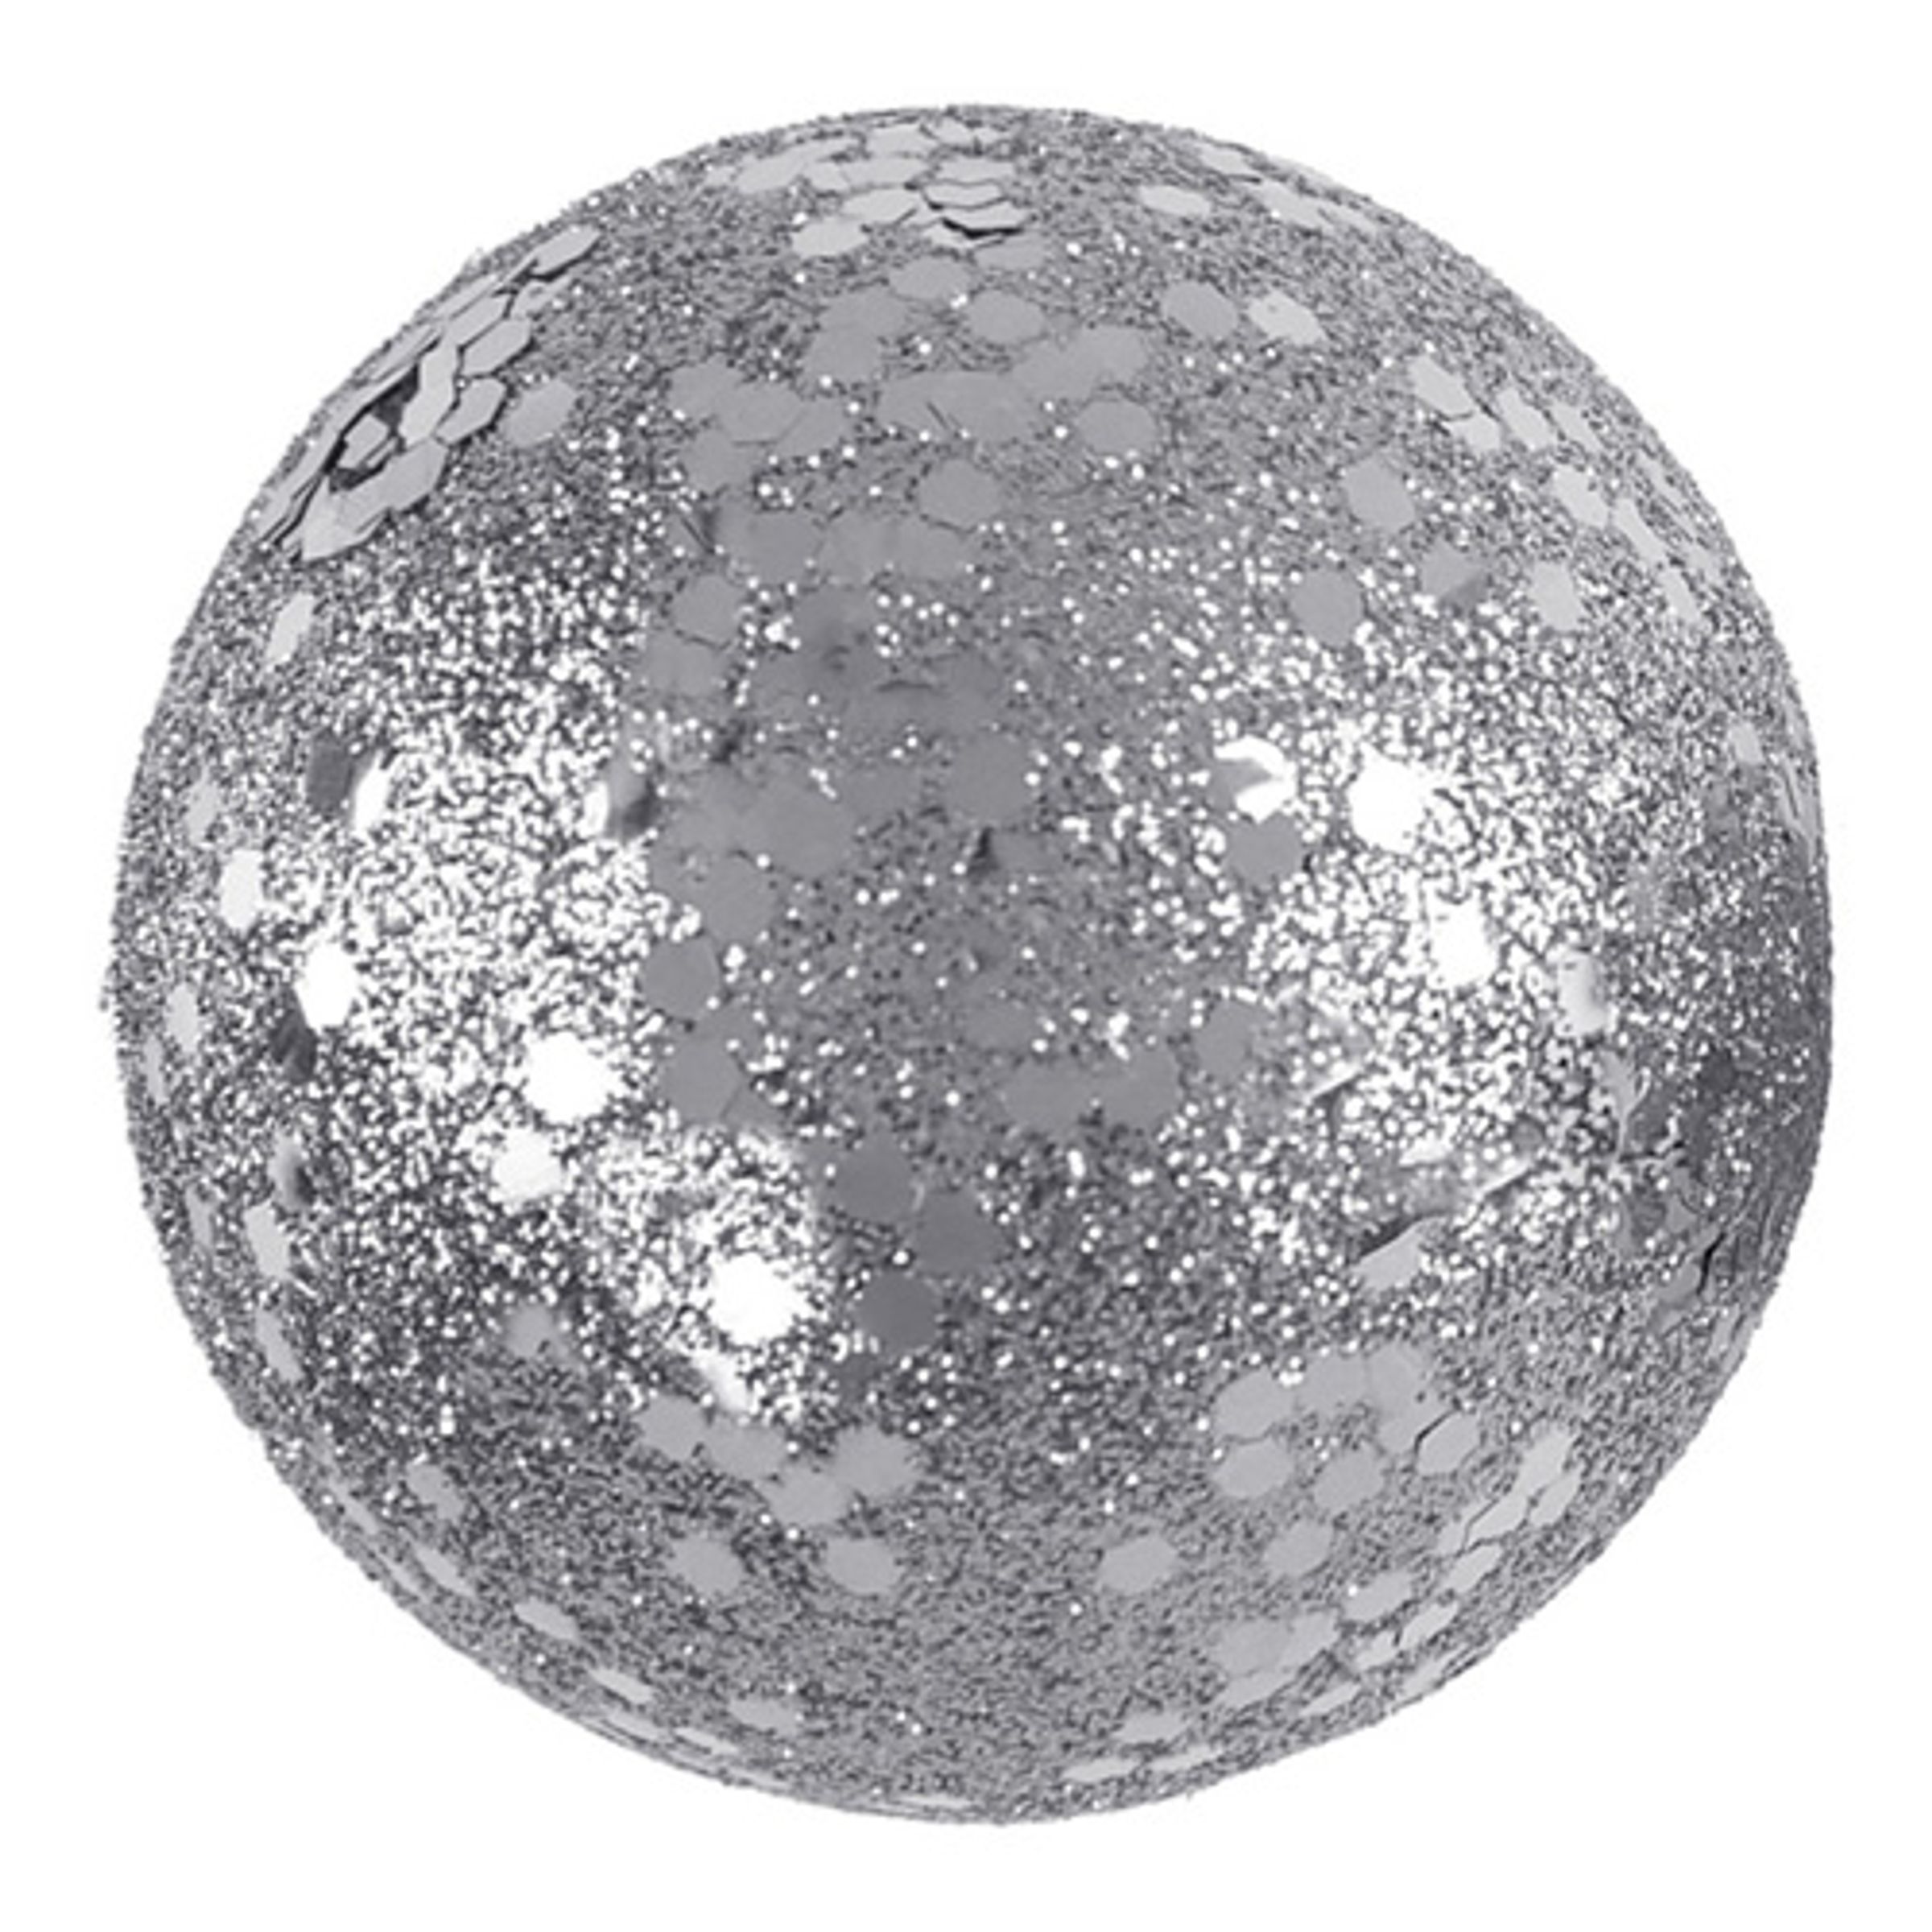 Dekorationsbollar Silver/Glitter - 10-pack